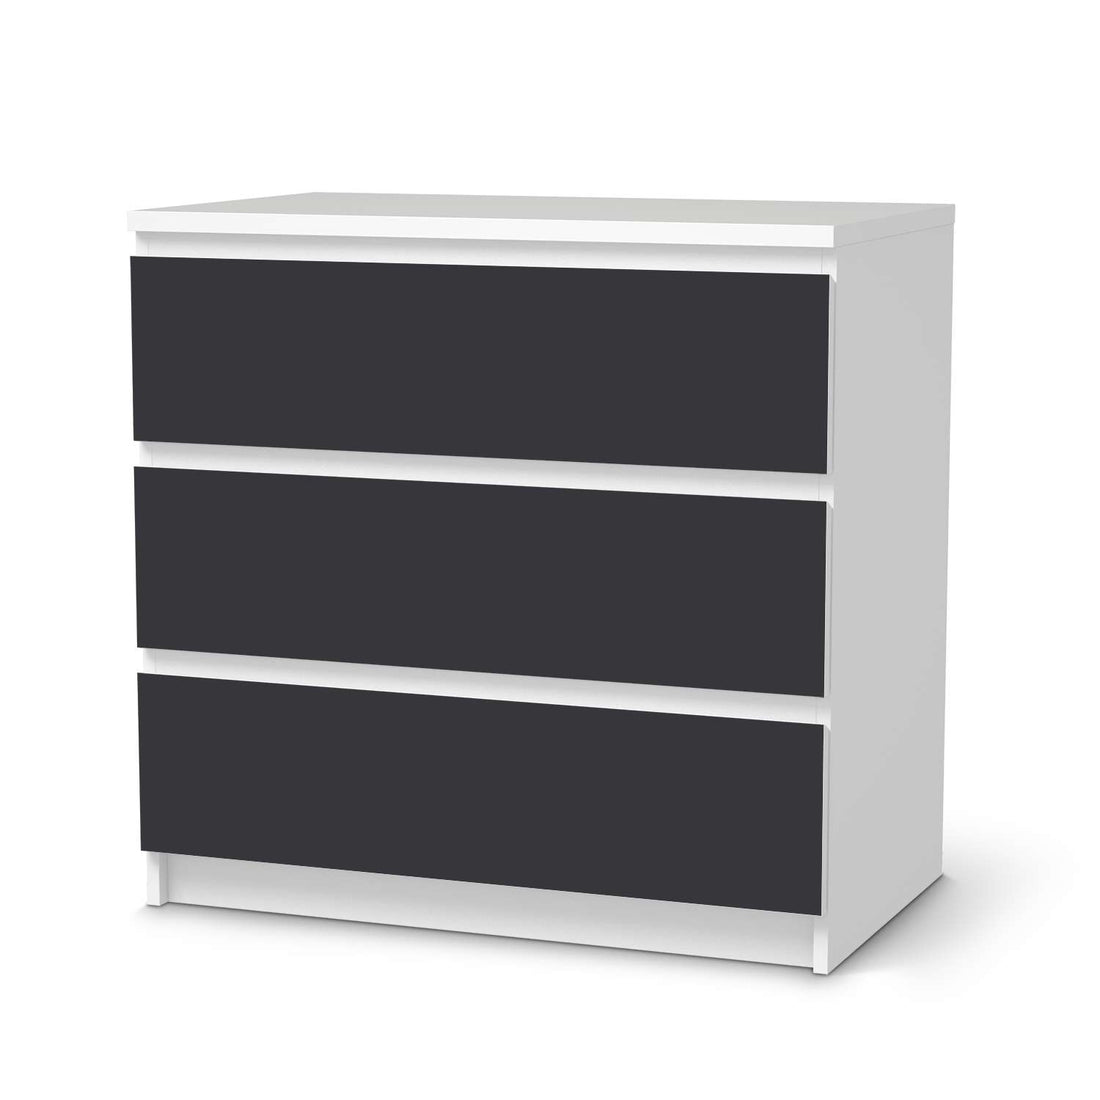 Klebefolie für Möbel Grau Dark - IKEA Malm Kommode 3 Schubladen  - weiss